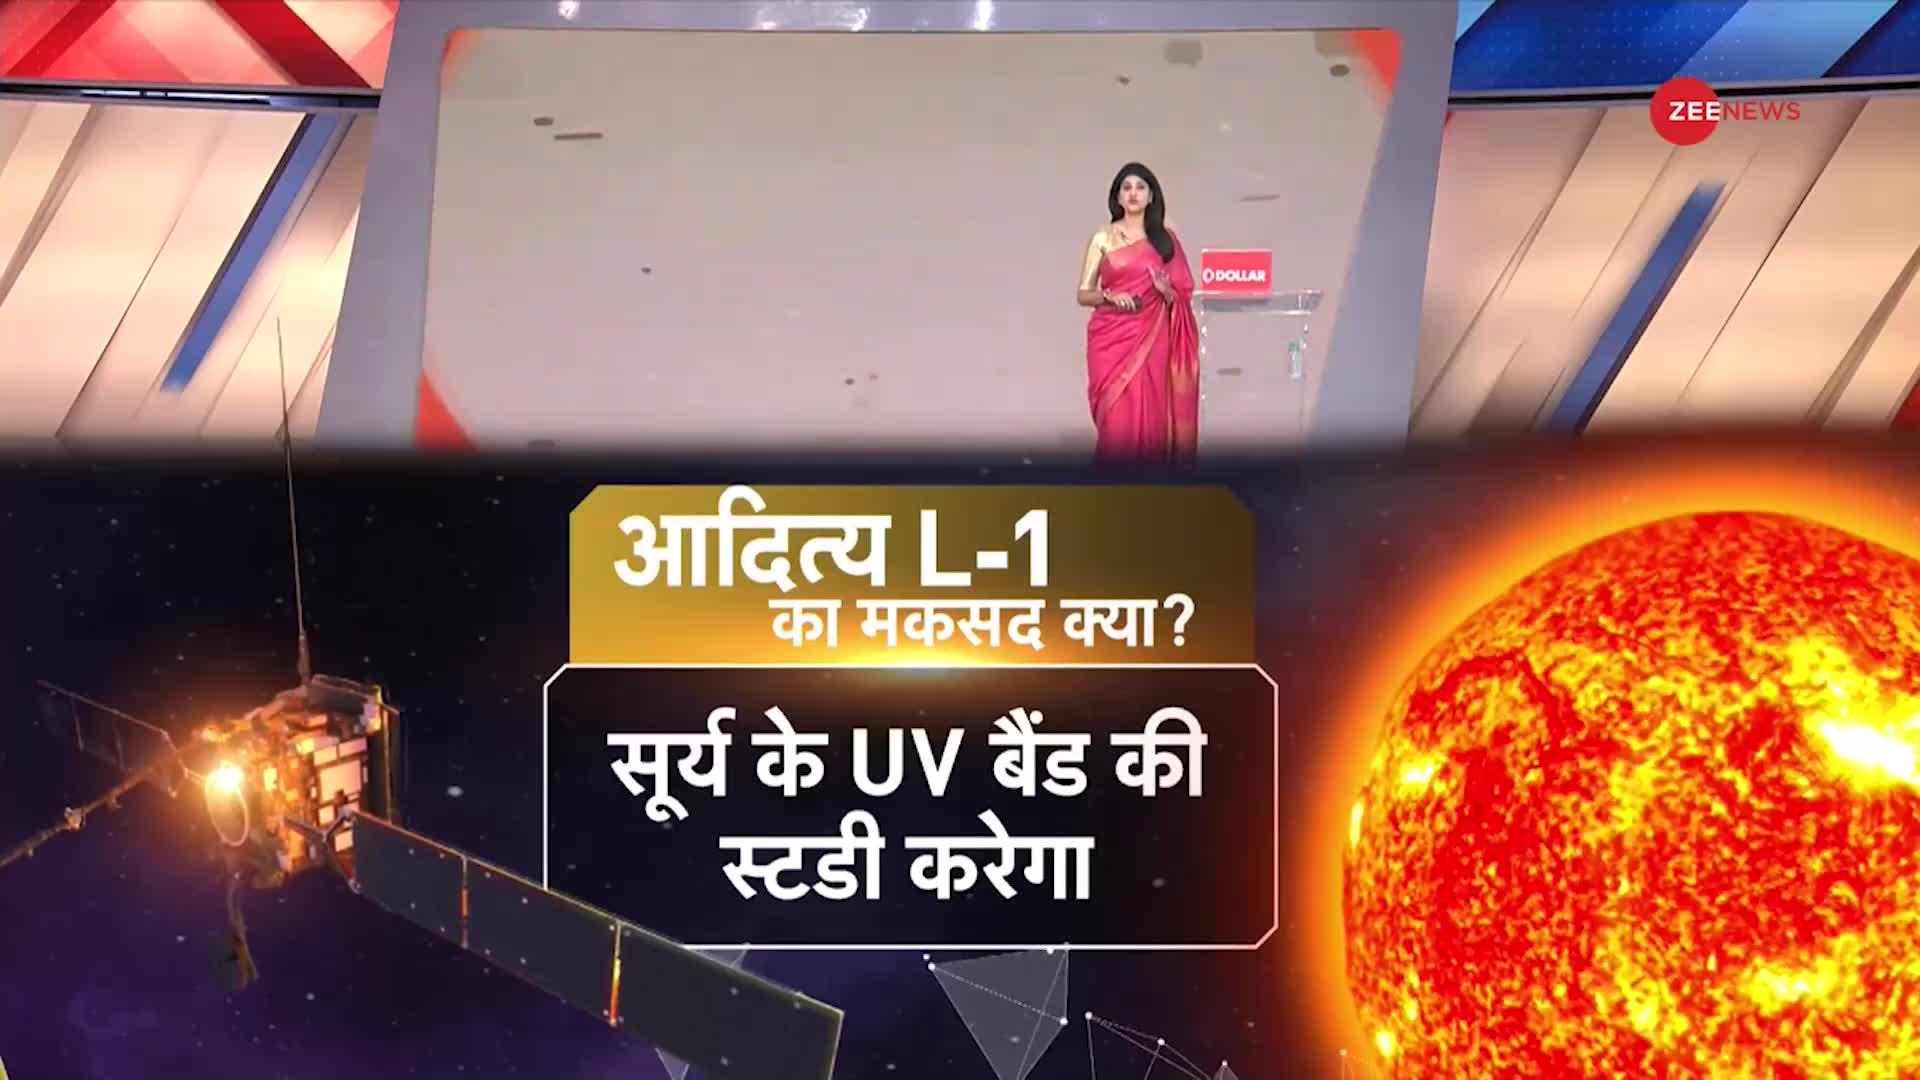 Baat pate ki: ISRO के Solar Mission से दुनिया बजेगा डंका, NASA-Chian में मचा हड़कंप!